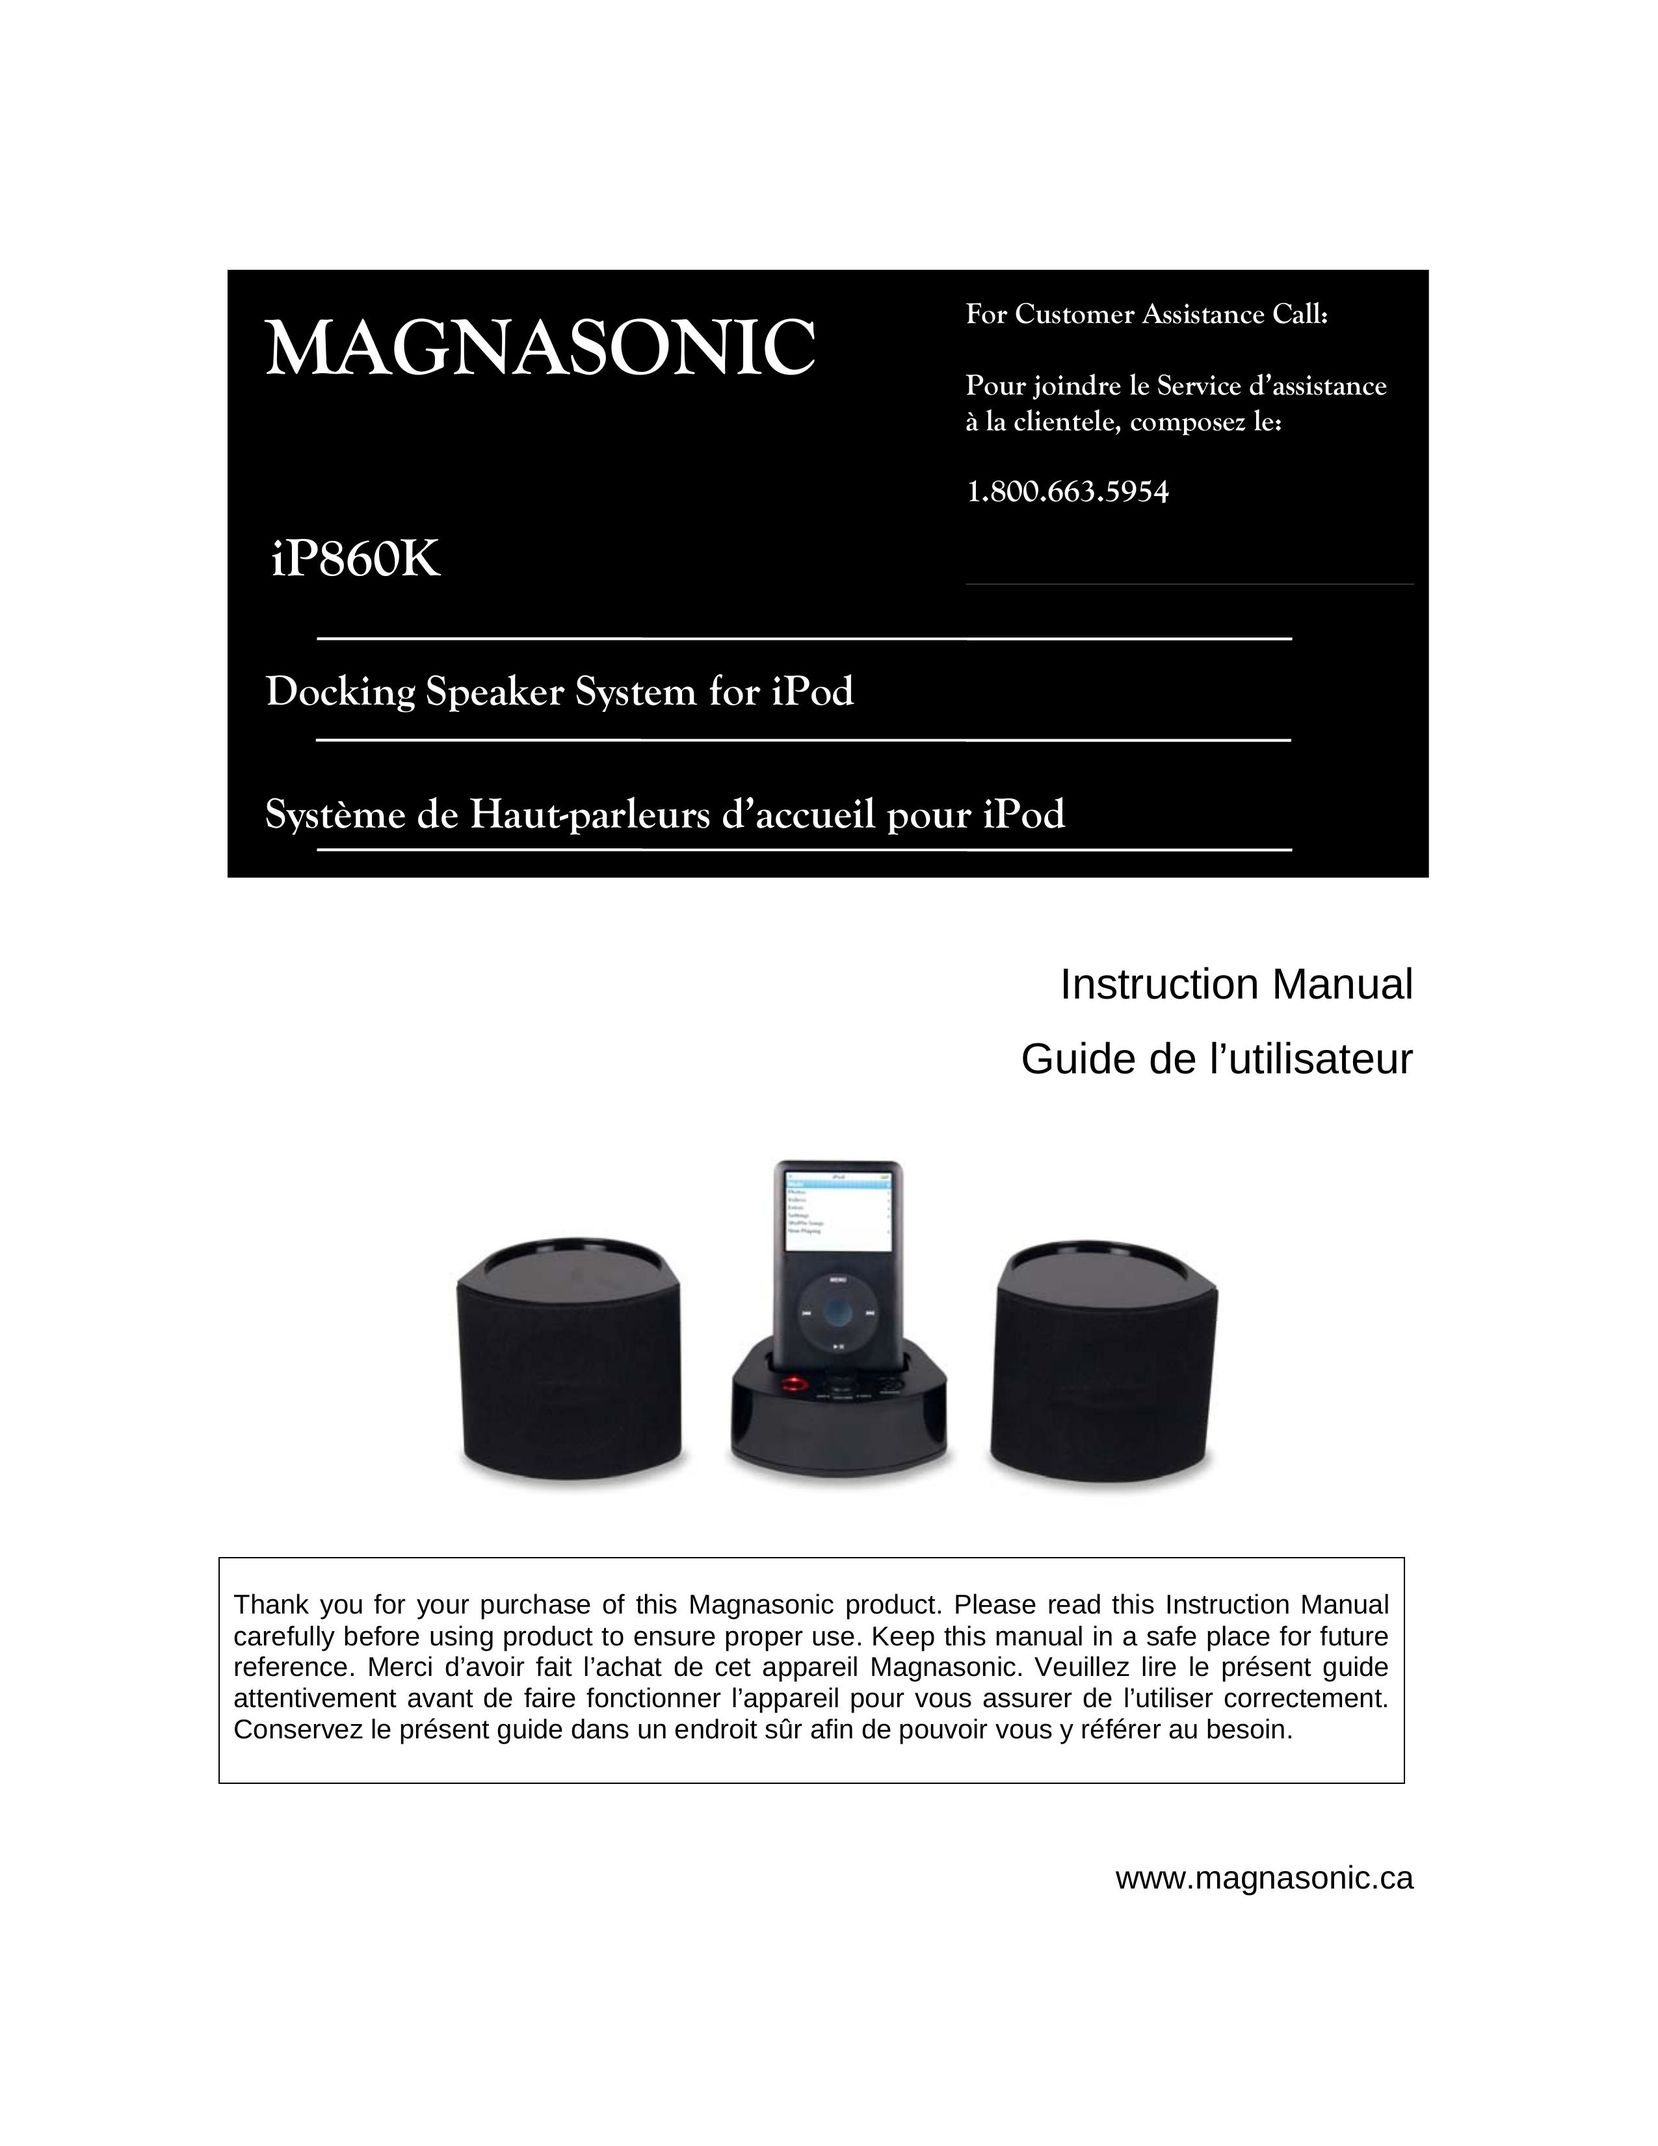 Magnasonic iP860K MP3 Docking Station User Manual